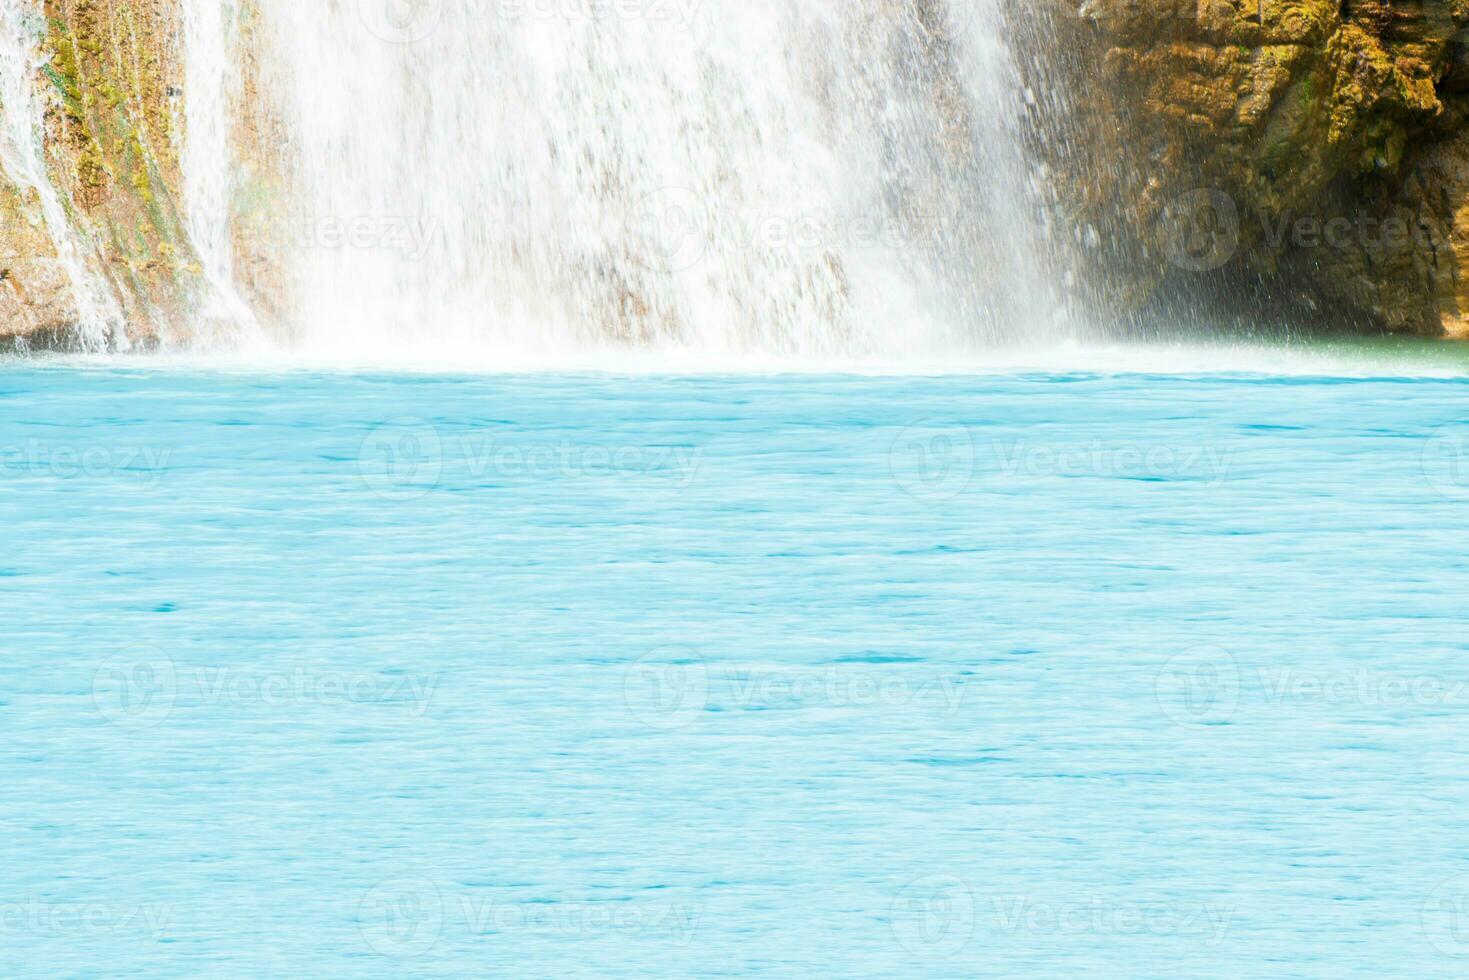 skön vattenfall i skogsbruk med blå vatten med krusningar på de yta. suddig transparent blå färgad klar lugna vatten yta textur med stänk och bubblor. vatten vågor med lysande. foto